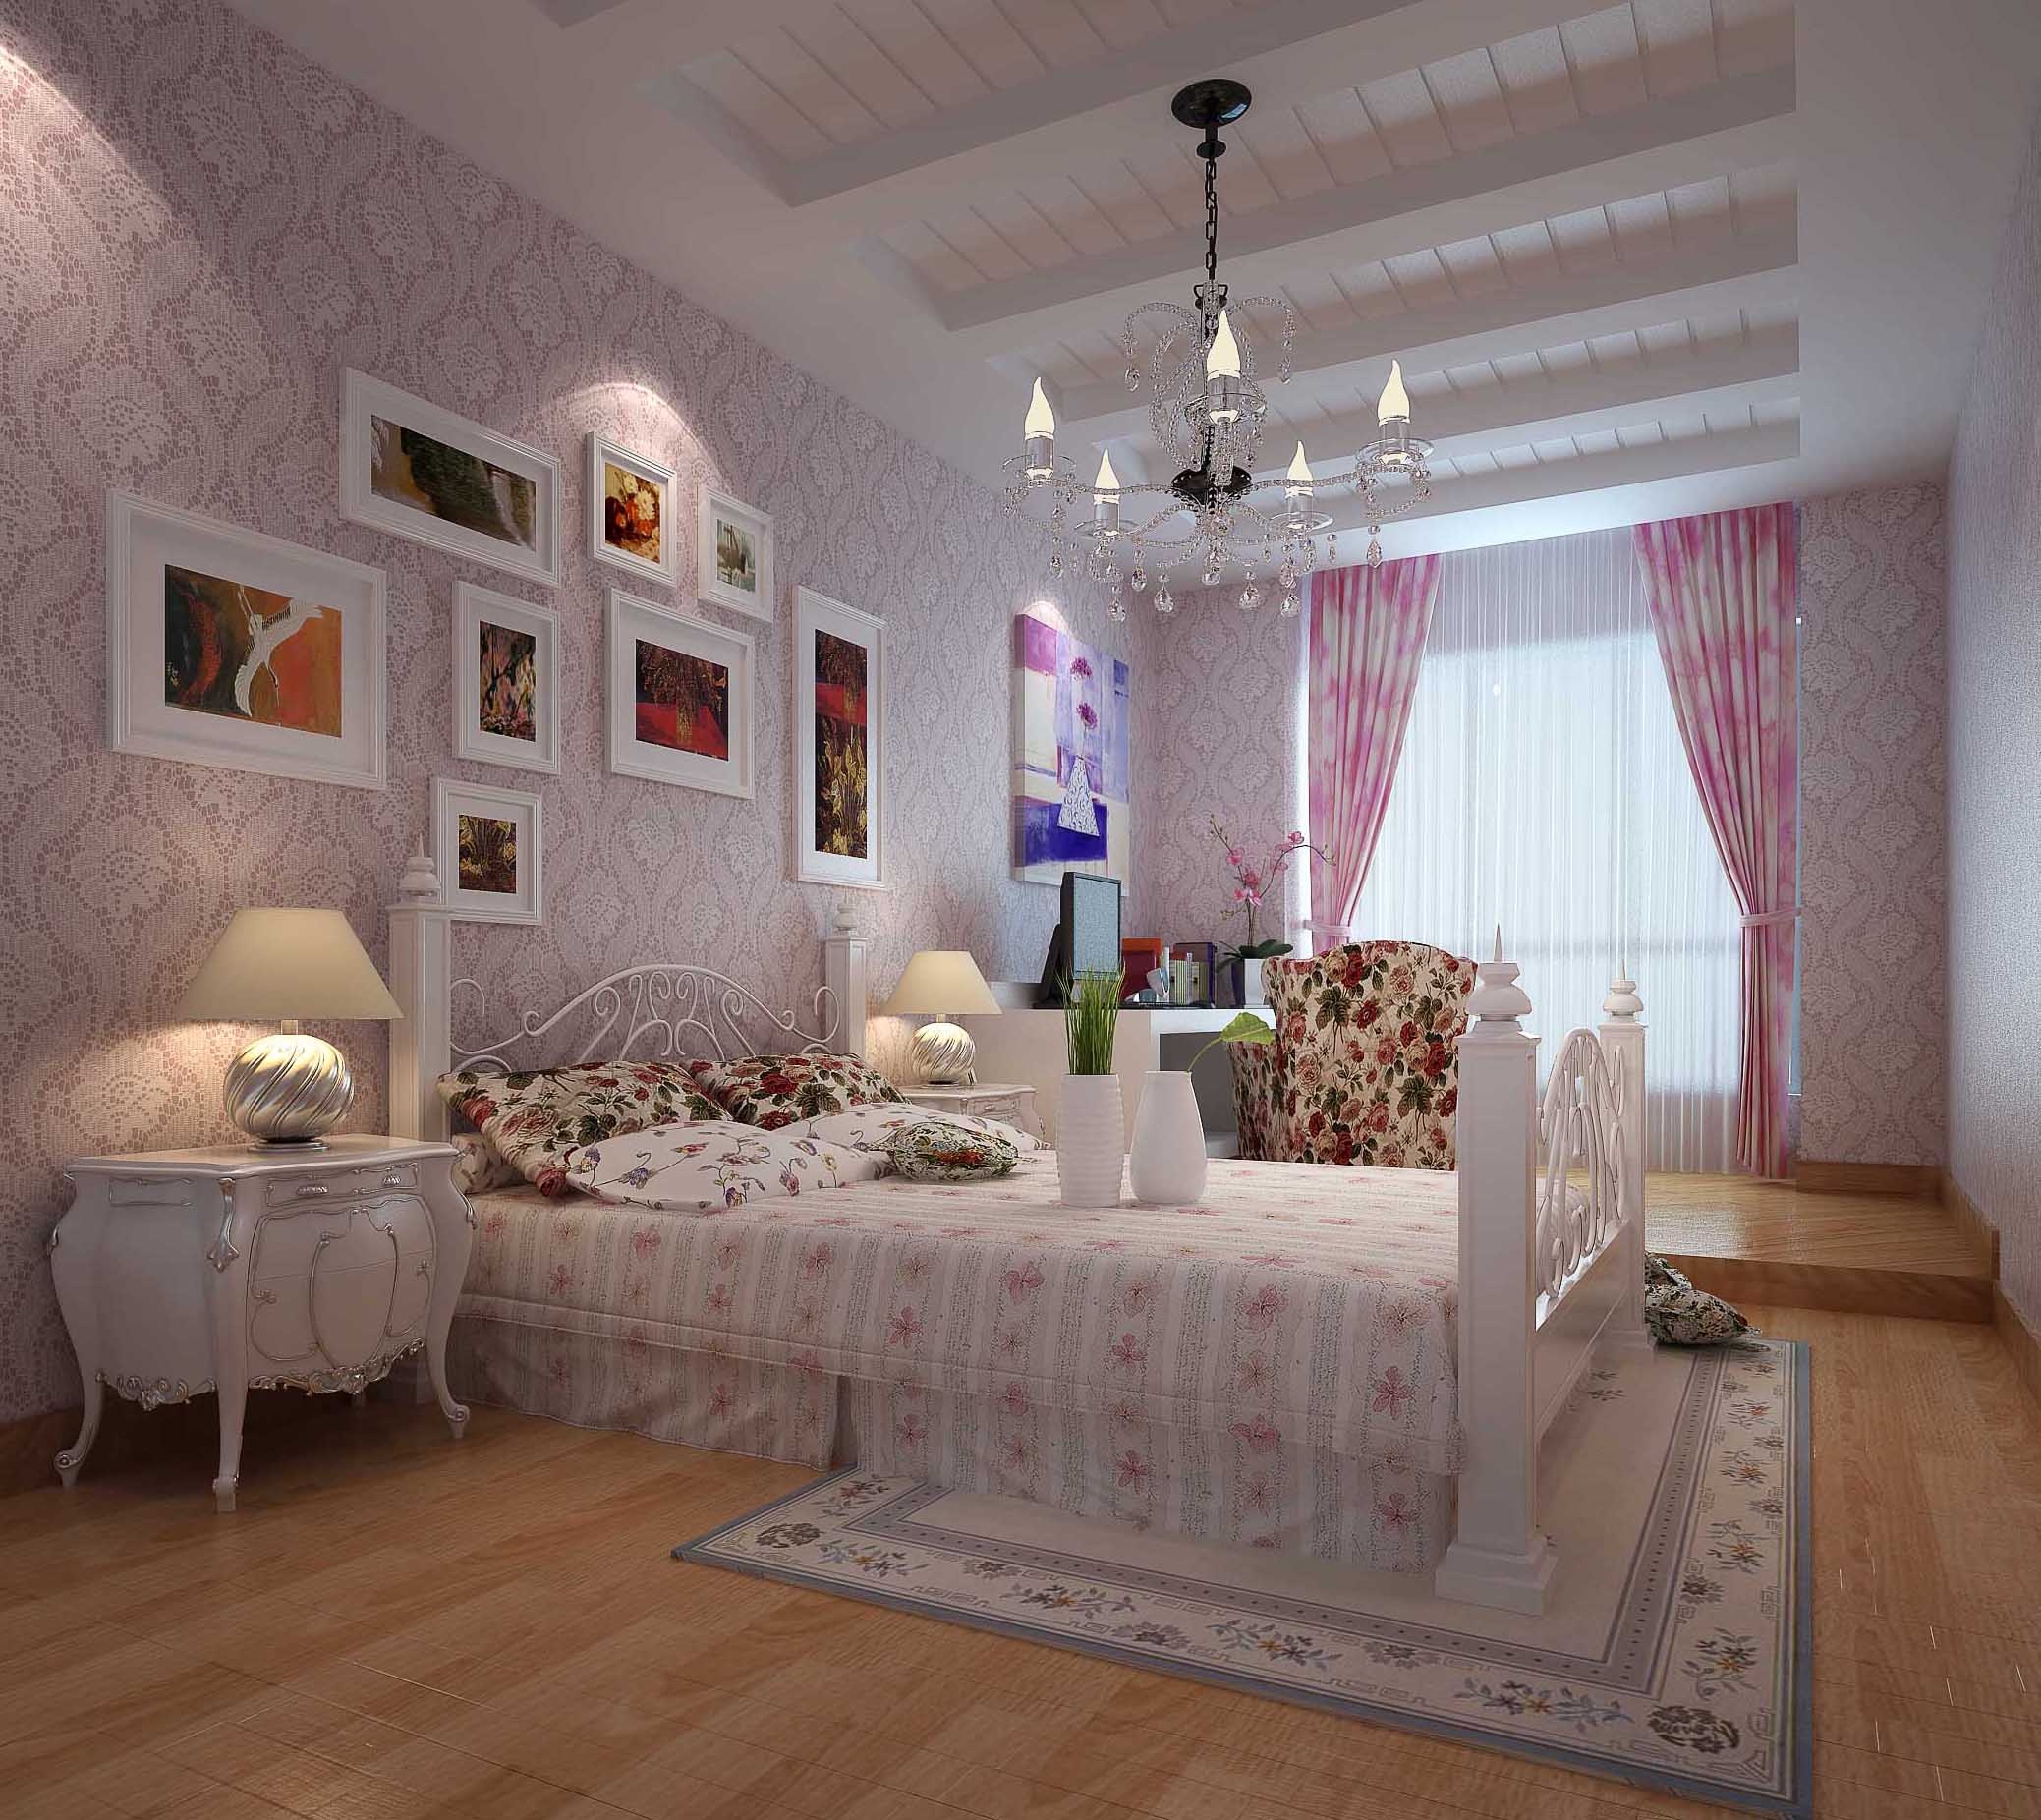 紫晶悦城三室两厅简欧风格设计